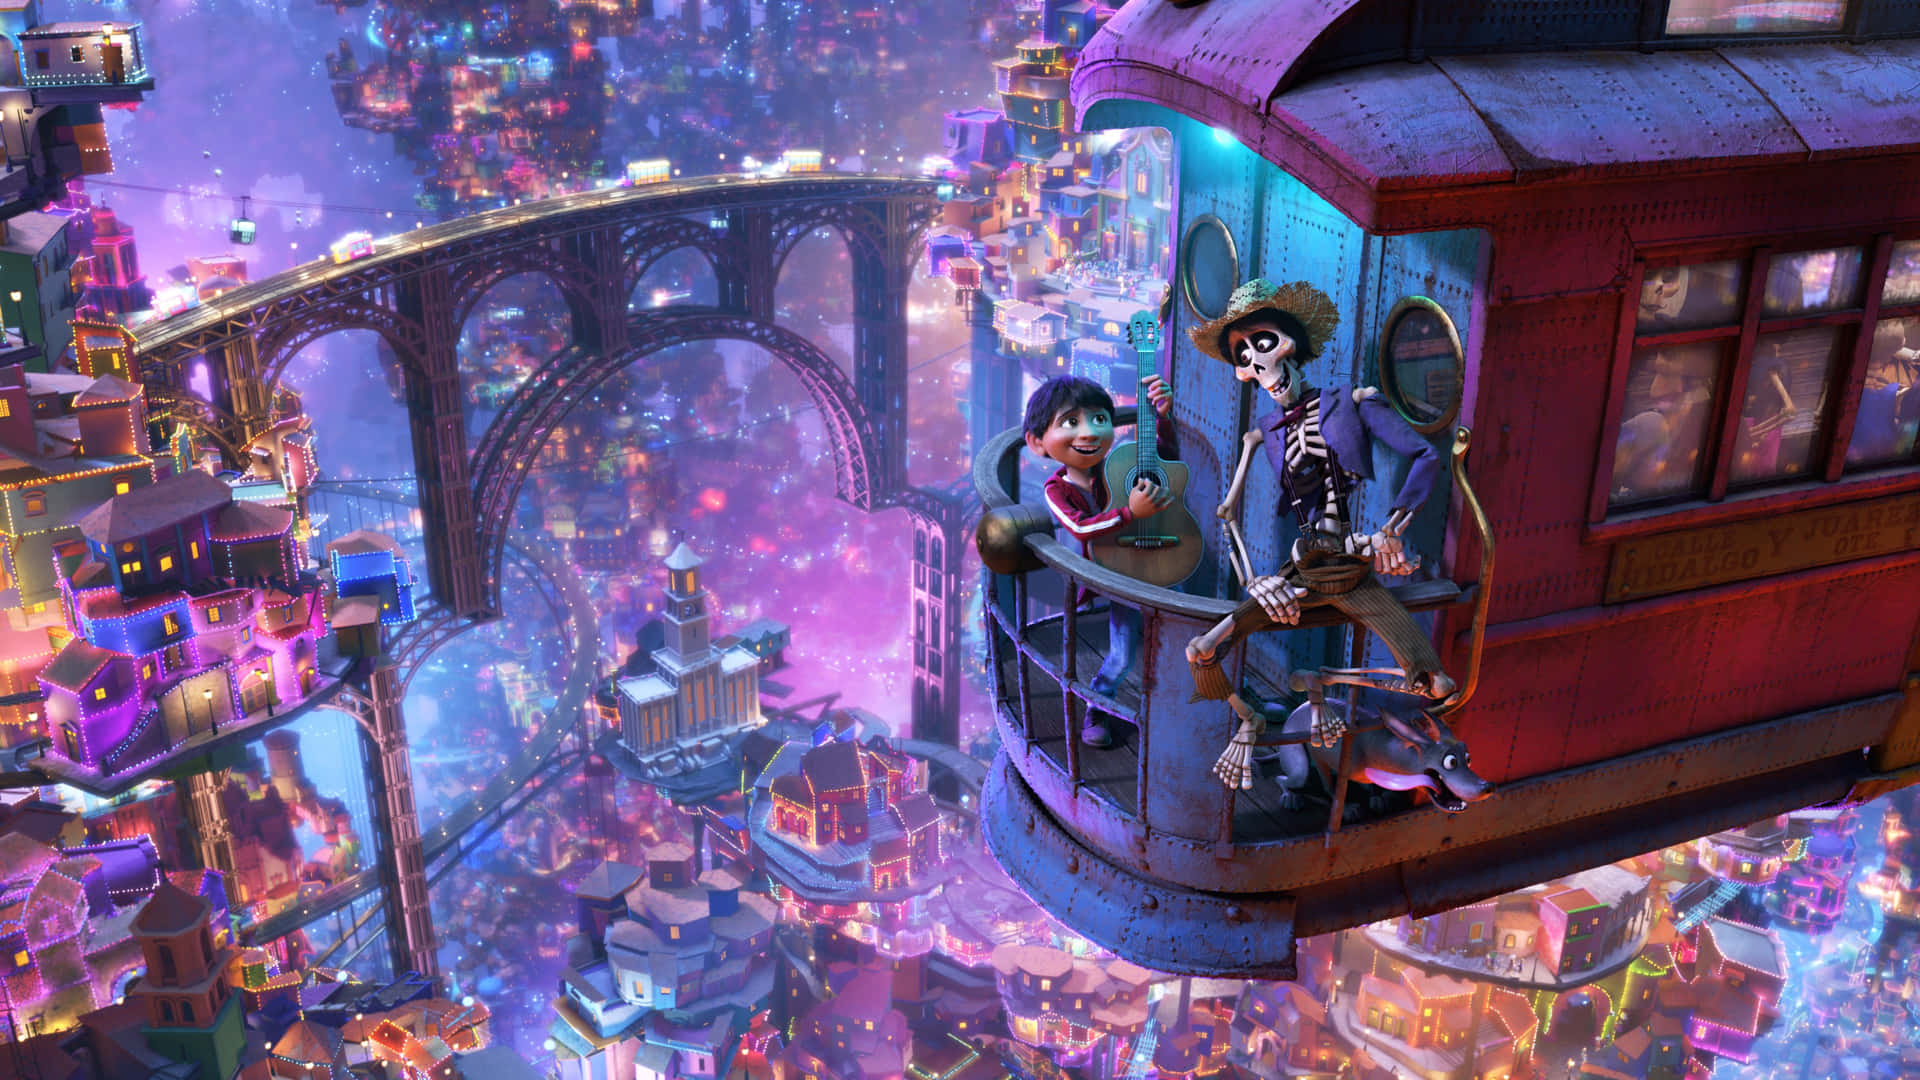 Disneypixars Coco Inspiriert Generationen Mit Seiner Magischen Geschichte. Wallpaper